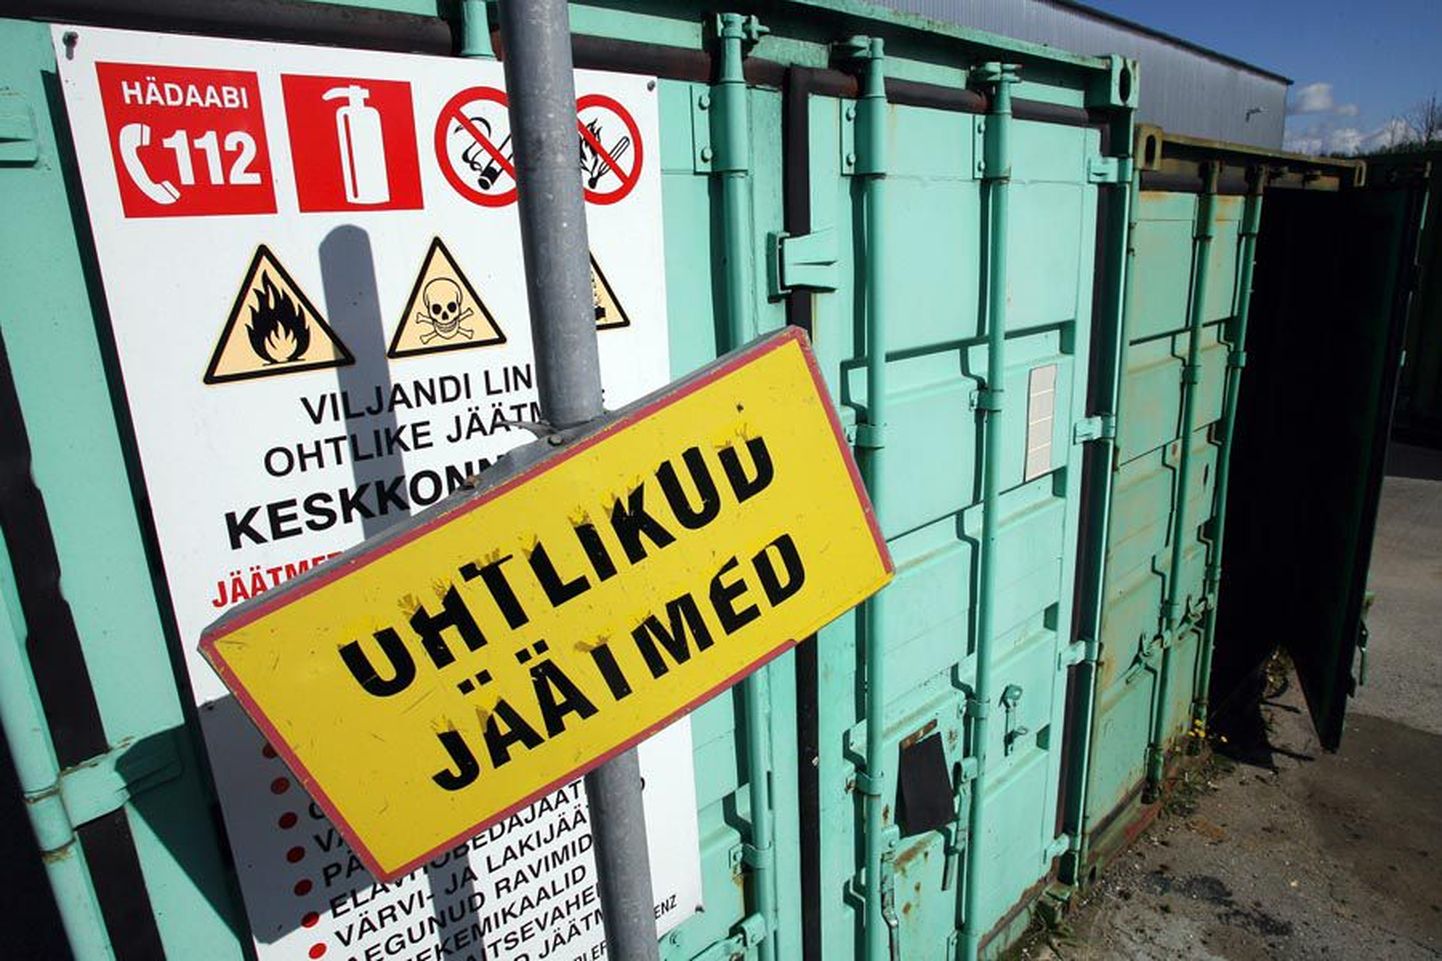 Viljandi jäätmejaamas on kaks konteinerit: üks elektroonika, teine kogu ülejäänud ohtliku utiili tarvis.